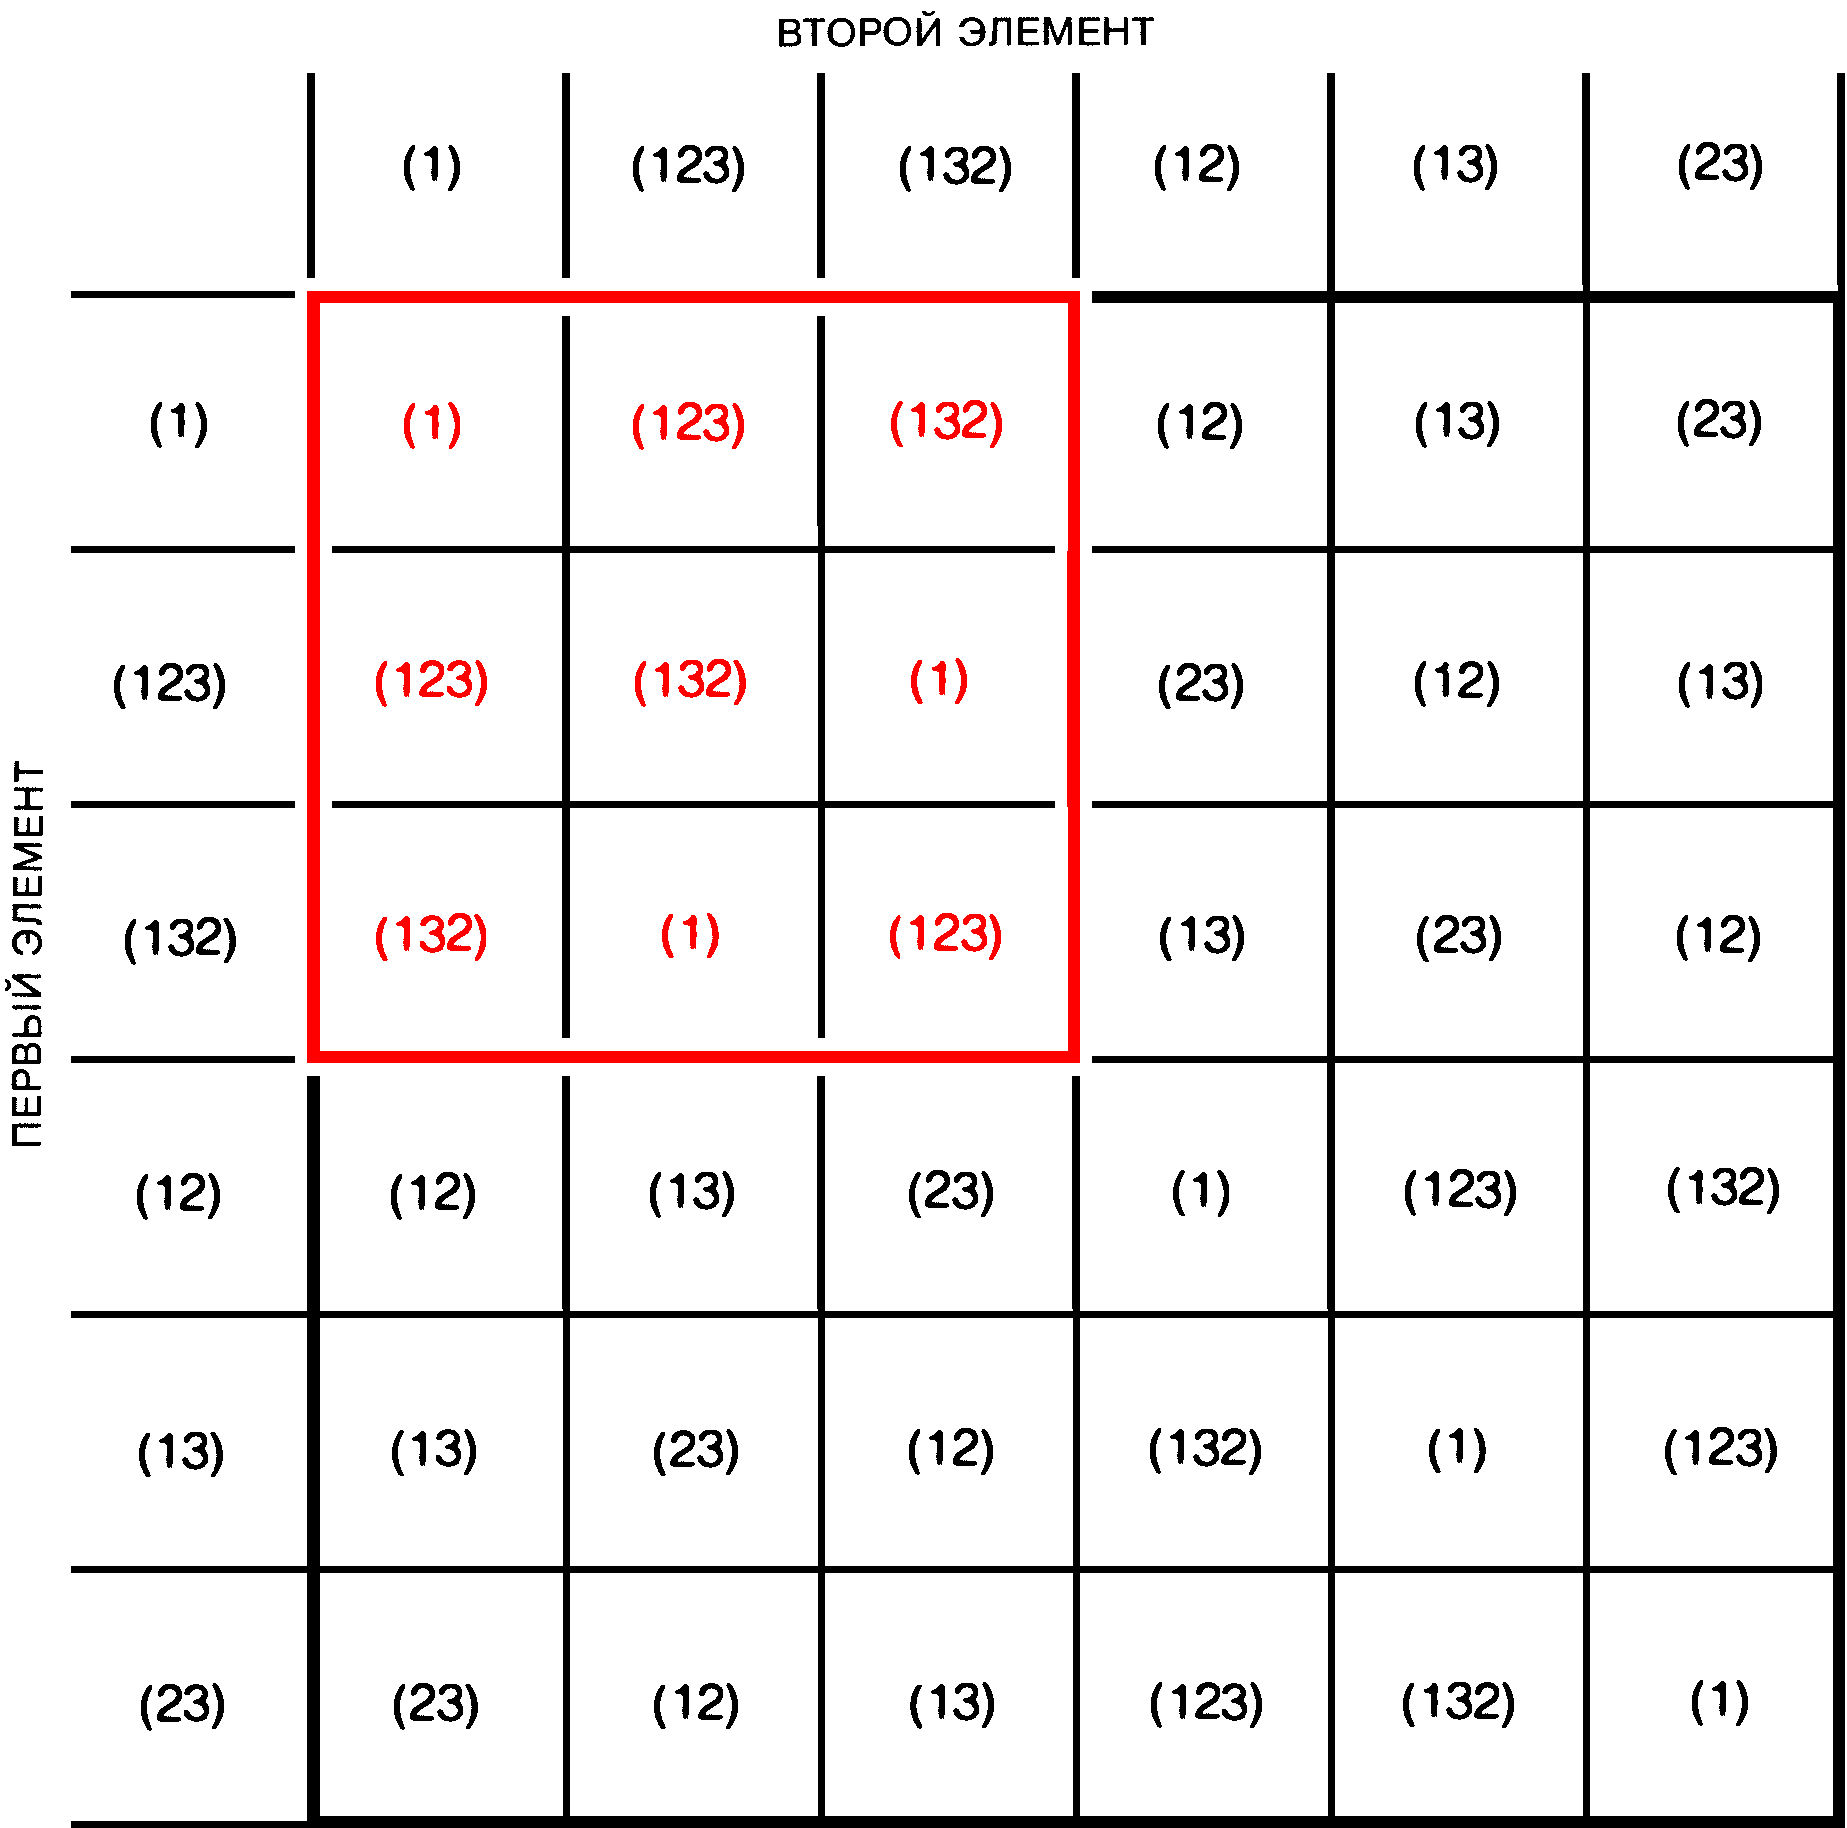 Таблица умножения для шести перестановок трёх объектов подтверждает, что перестановки удовлетворяют аксиомам группы.